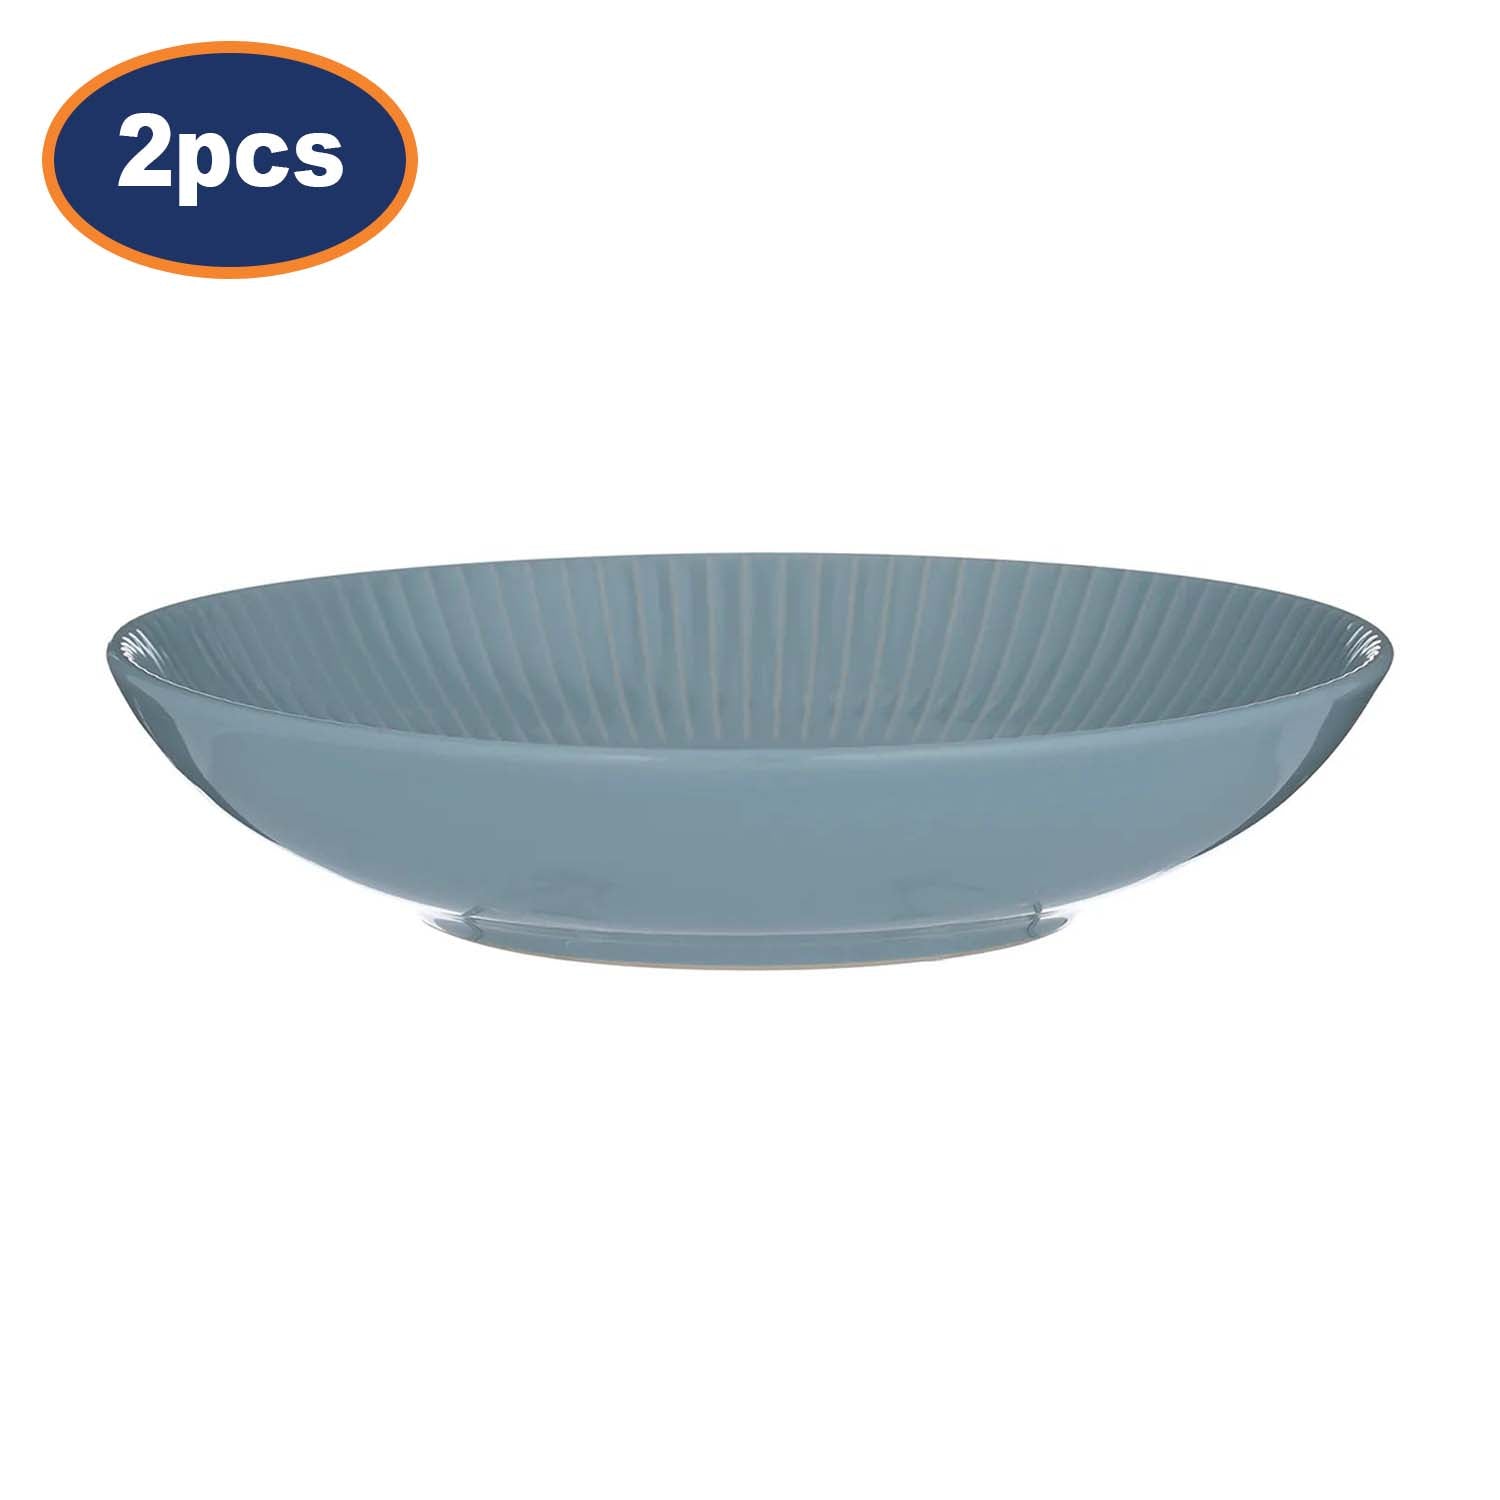 2Pcs 22cm Blue Round Stoneware Serving Bowls